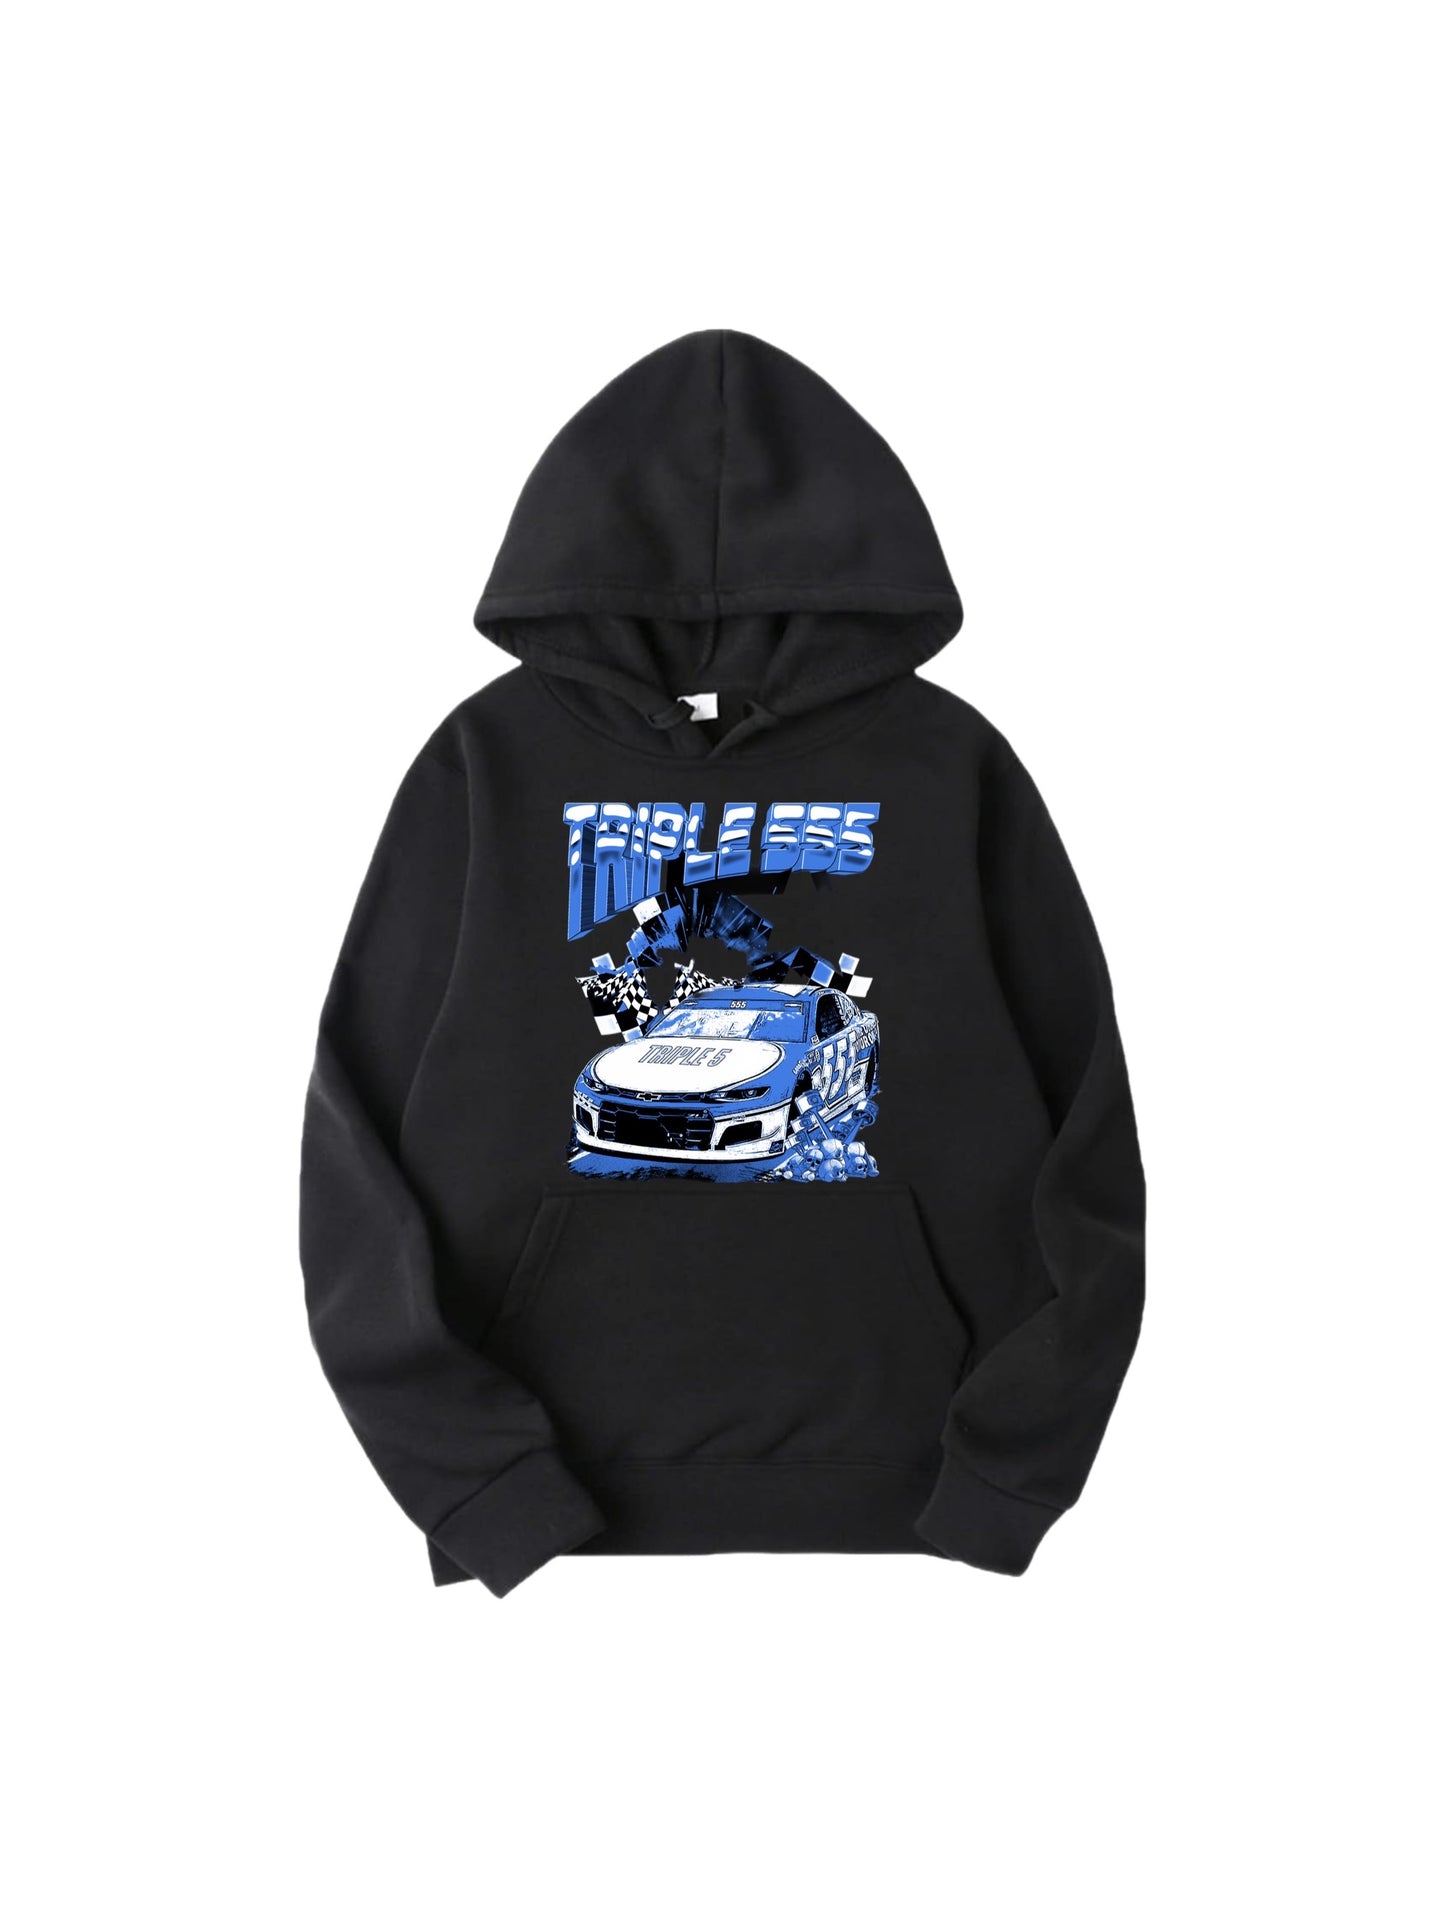 Triple 555 racer hoodies